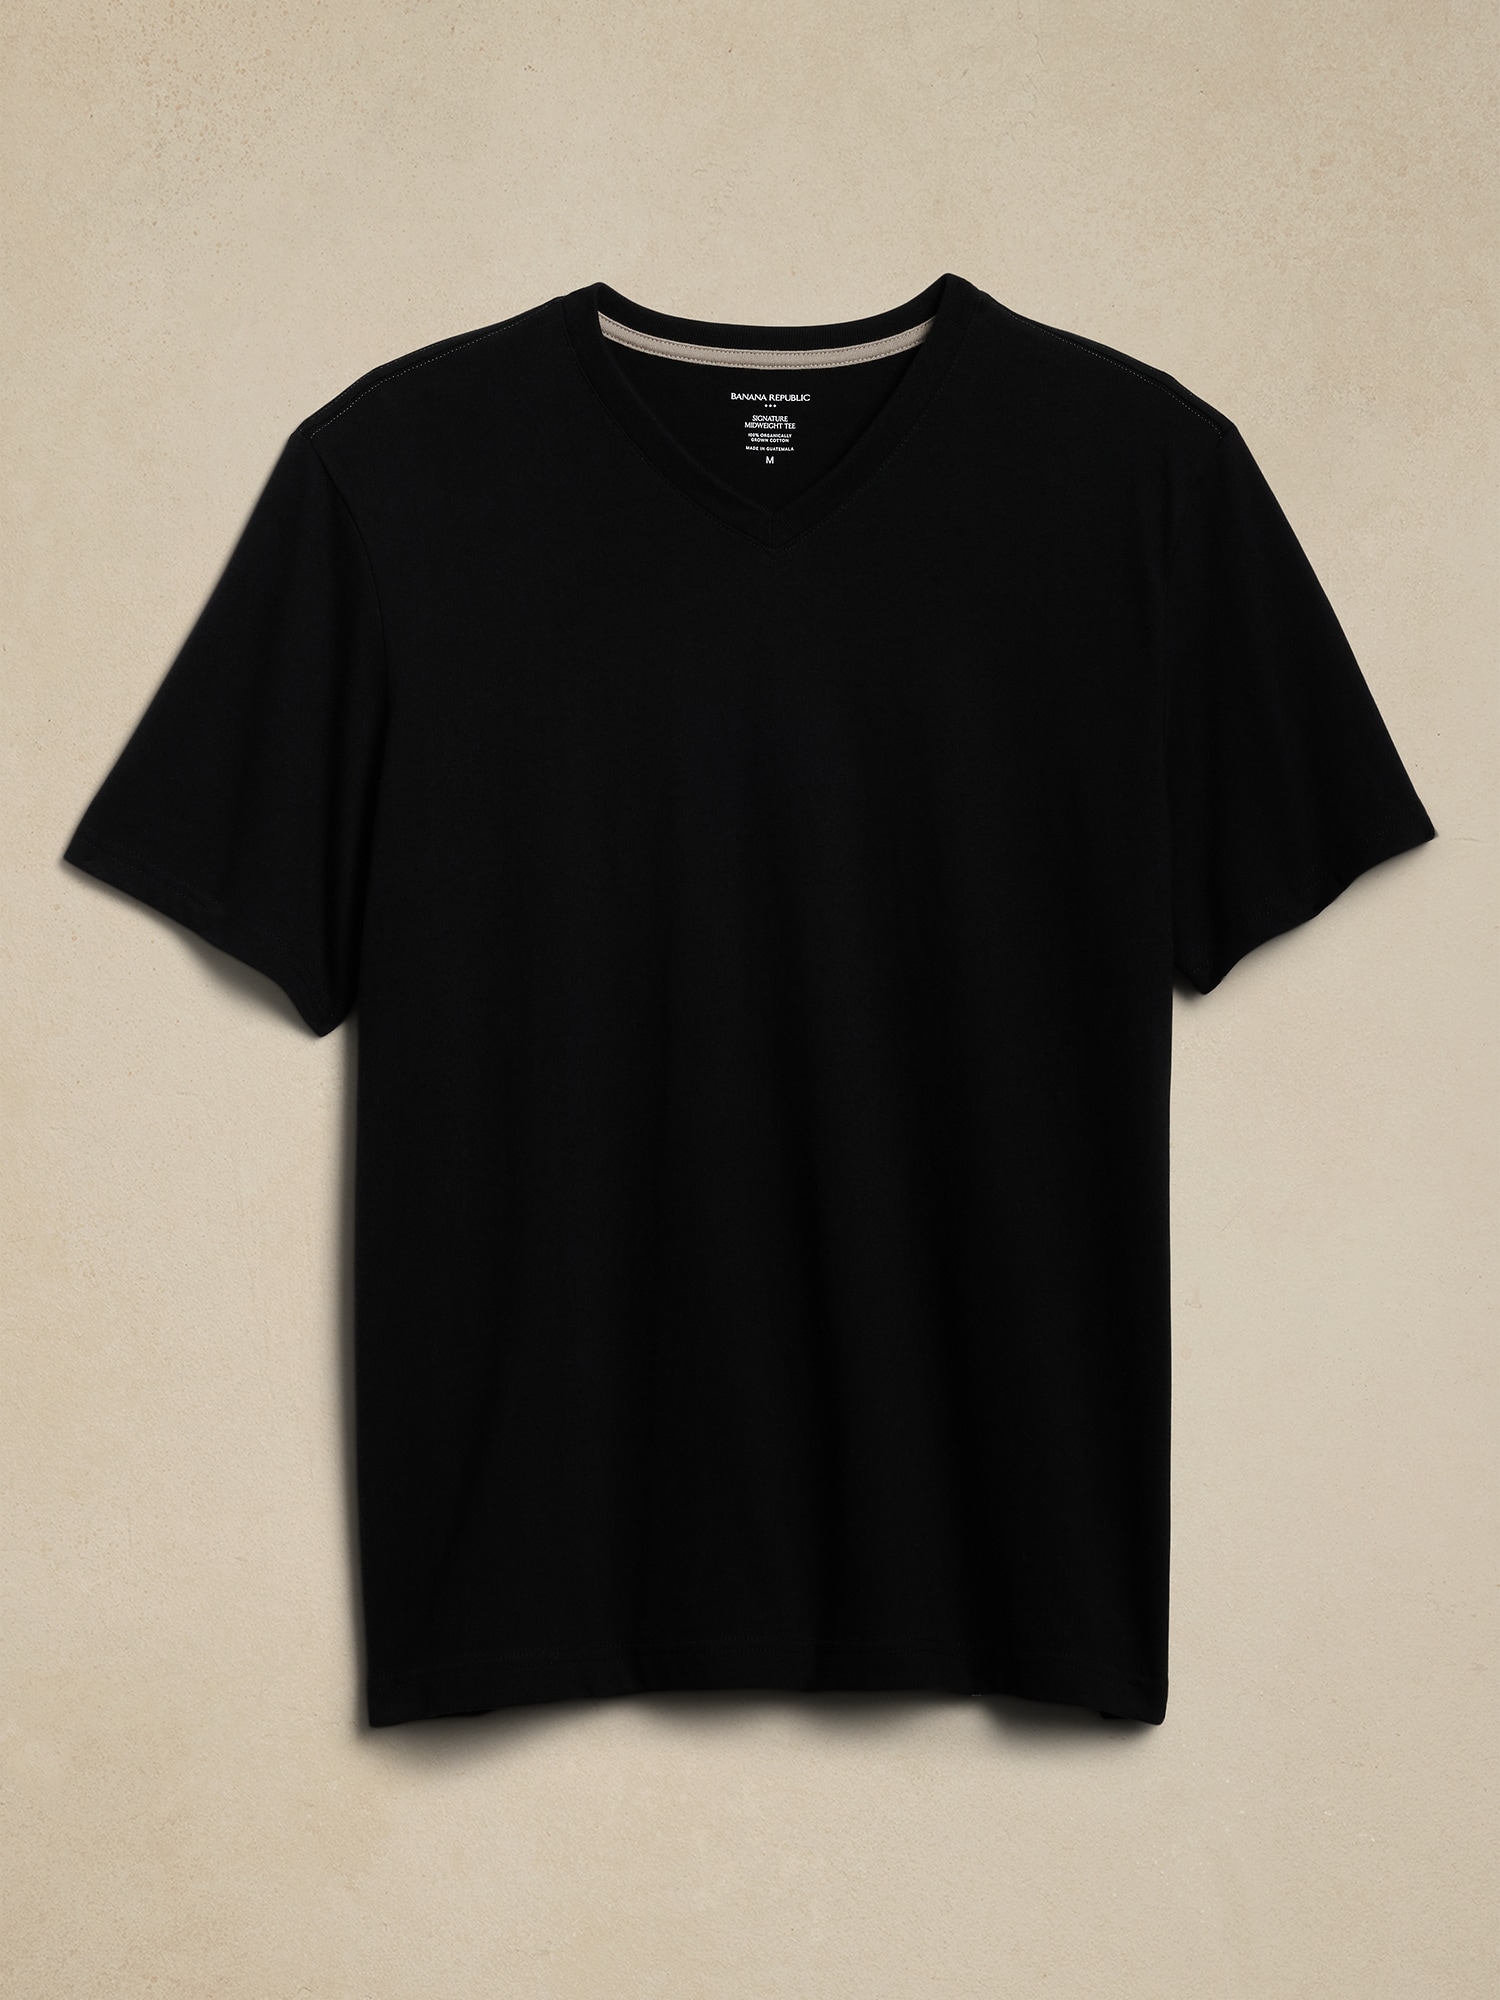 Men's Banana Republic T-Shirts Shrink : r/Costco